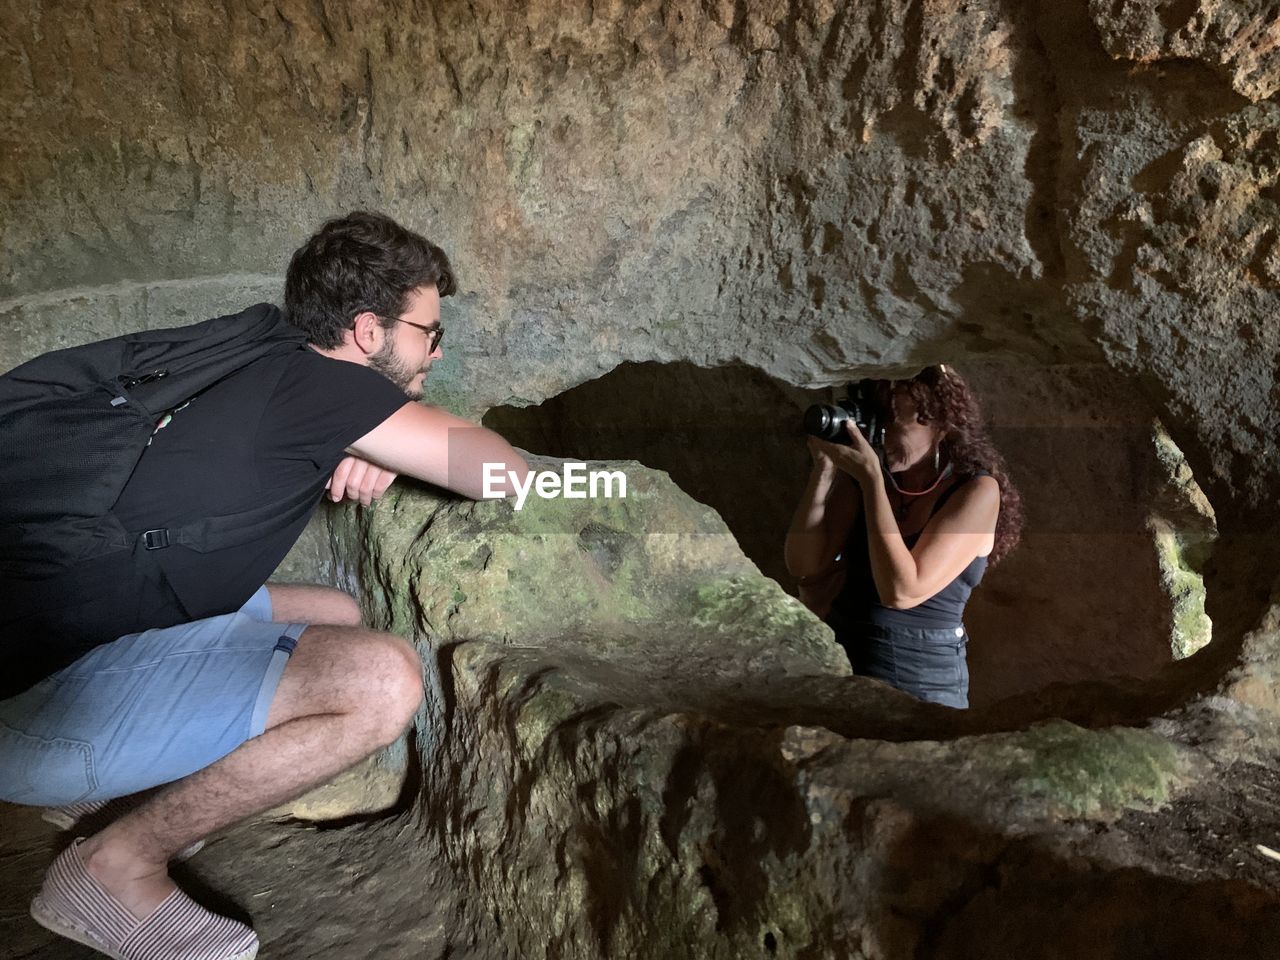 Shooting dans une grotte